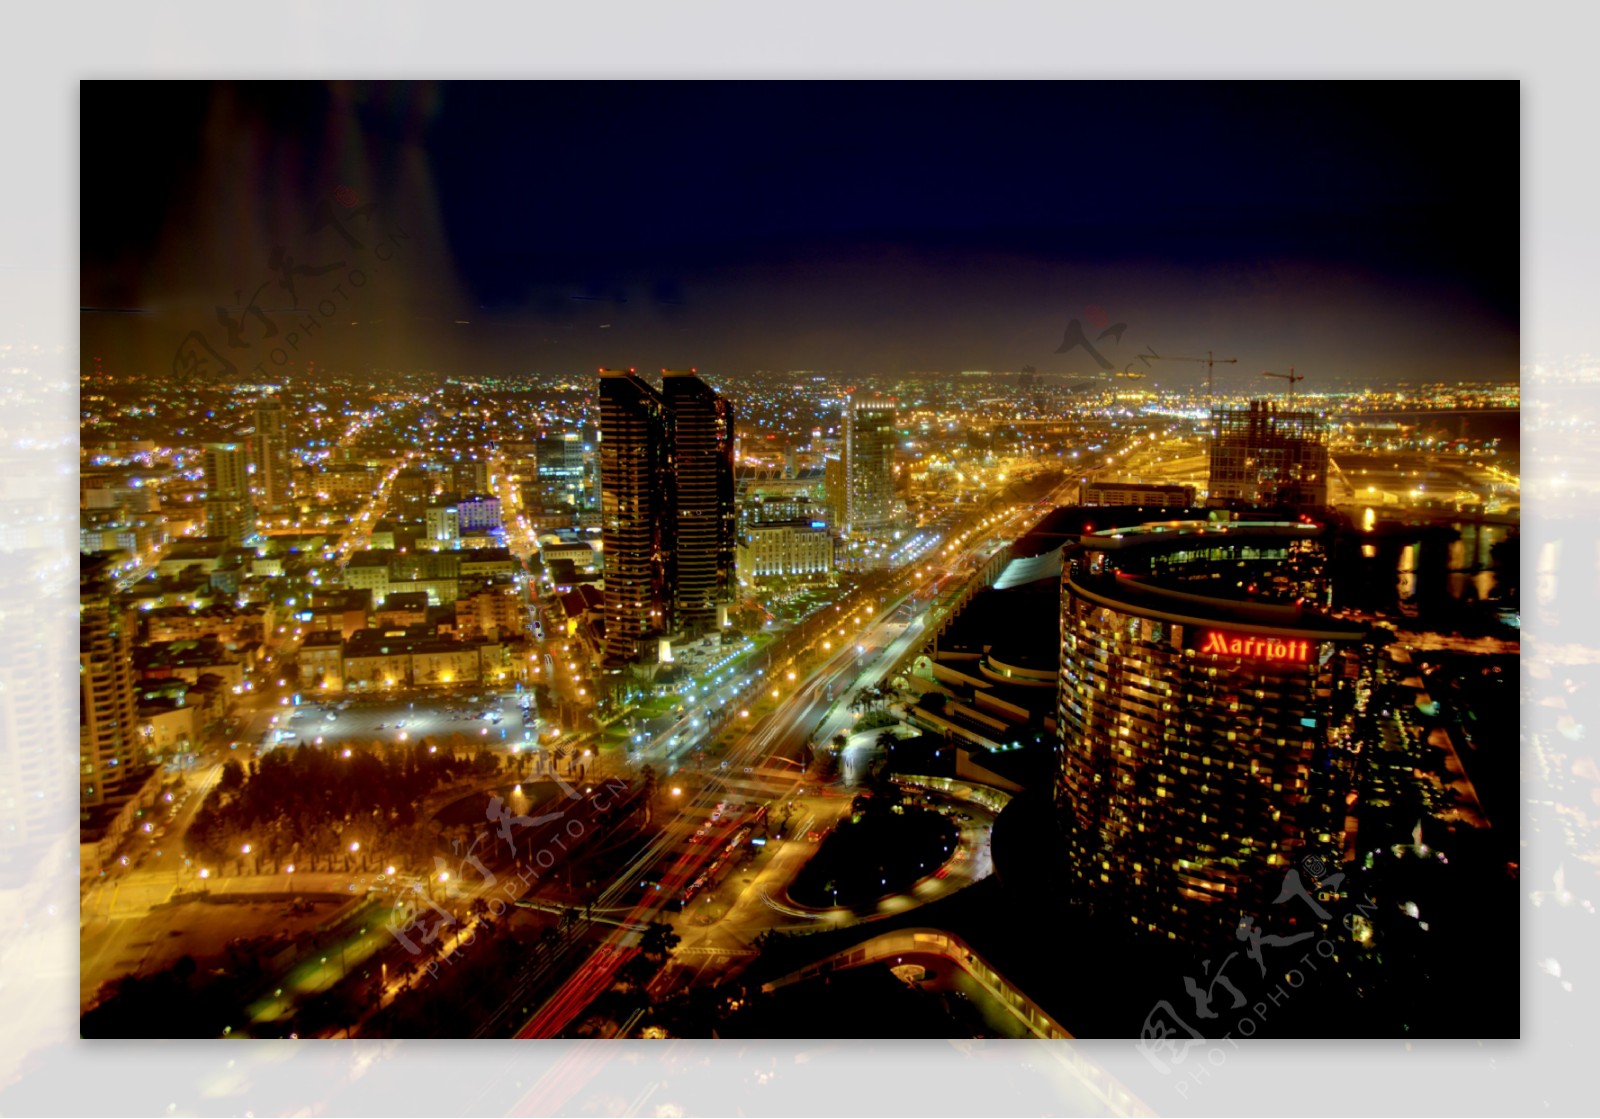 美国圣地亚哥夜景图片